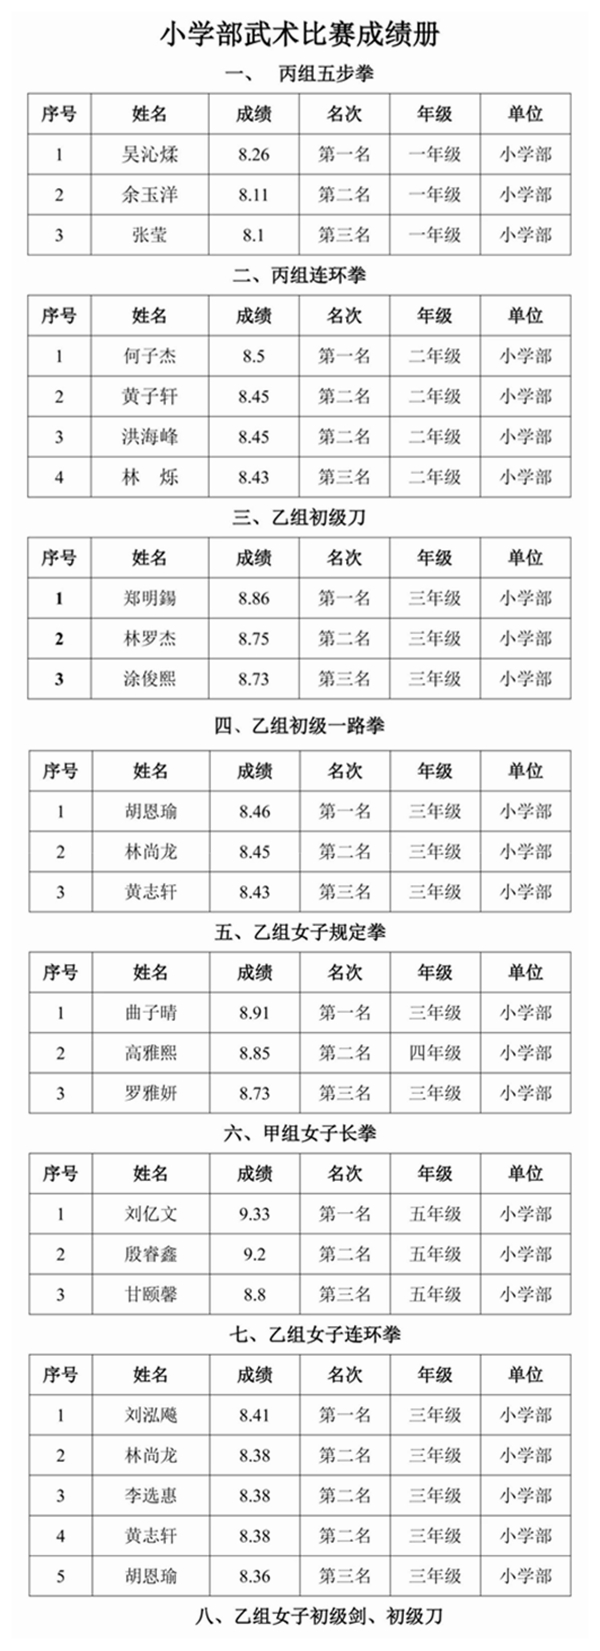 福清西山學校第十四屆運動會武術套路項目比賽圓滿落幕